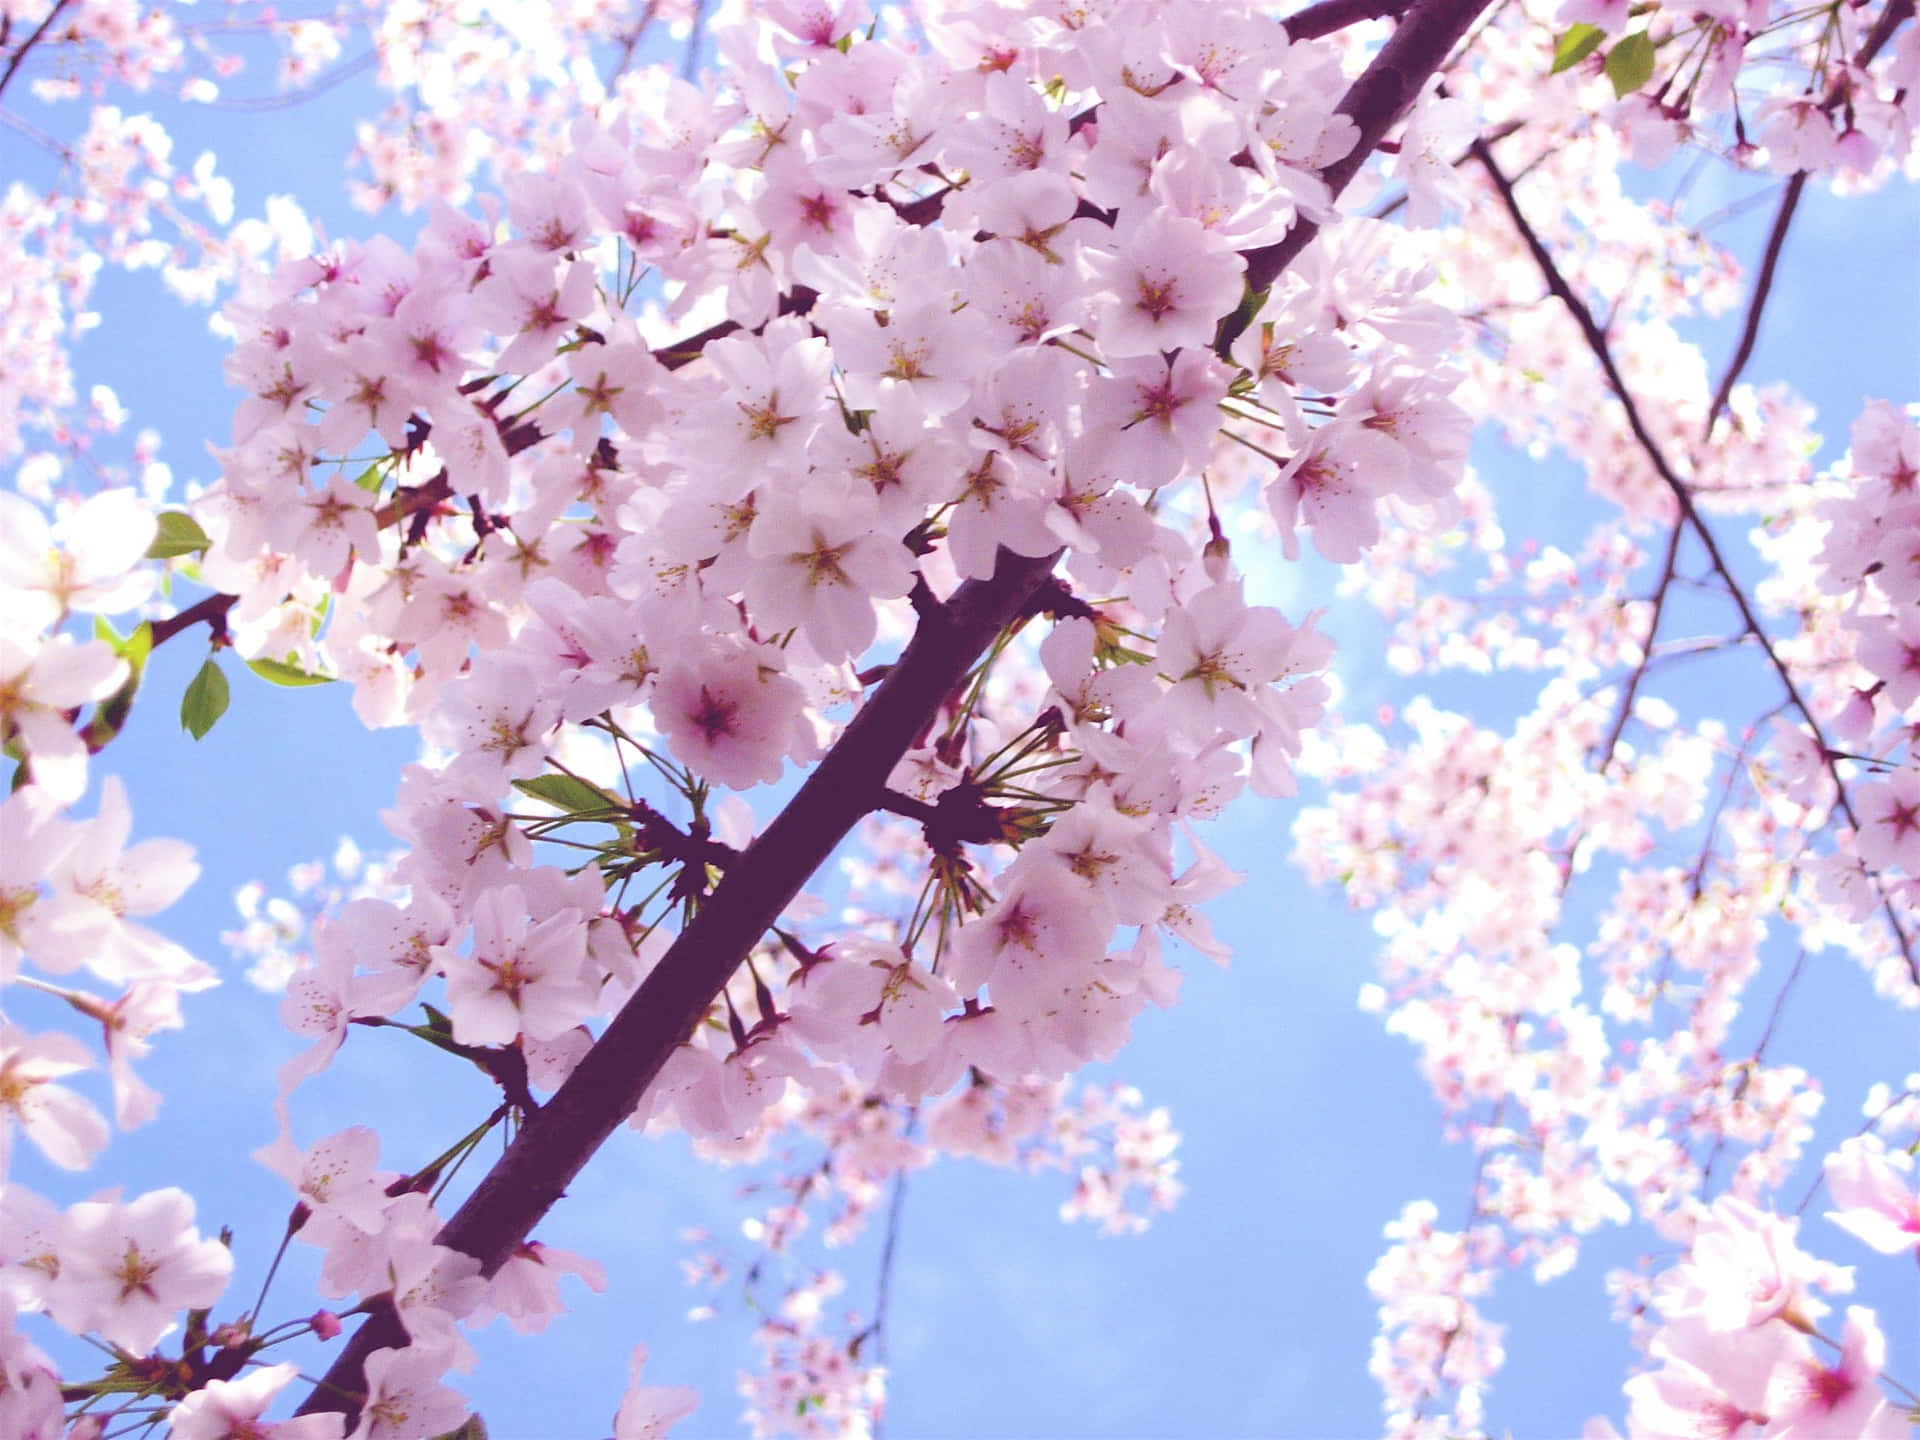 Unalbero Di Sakura Dalle Tonalità Rosa Si Erge Fiero Contro Un Cielo Azzurro Brillante. Sfondo